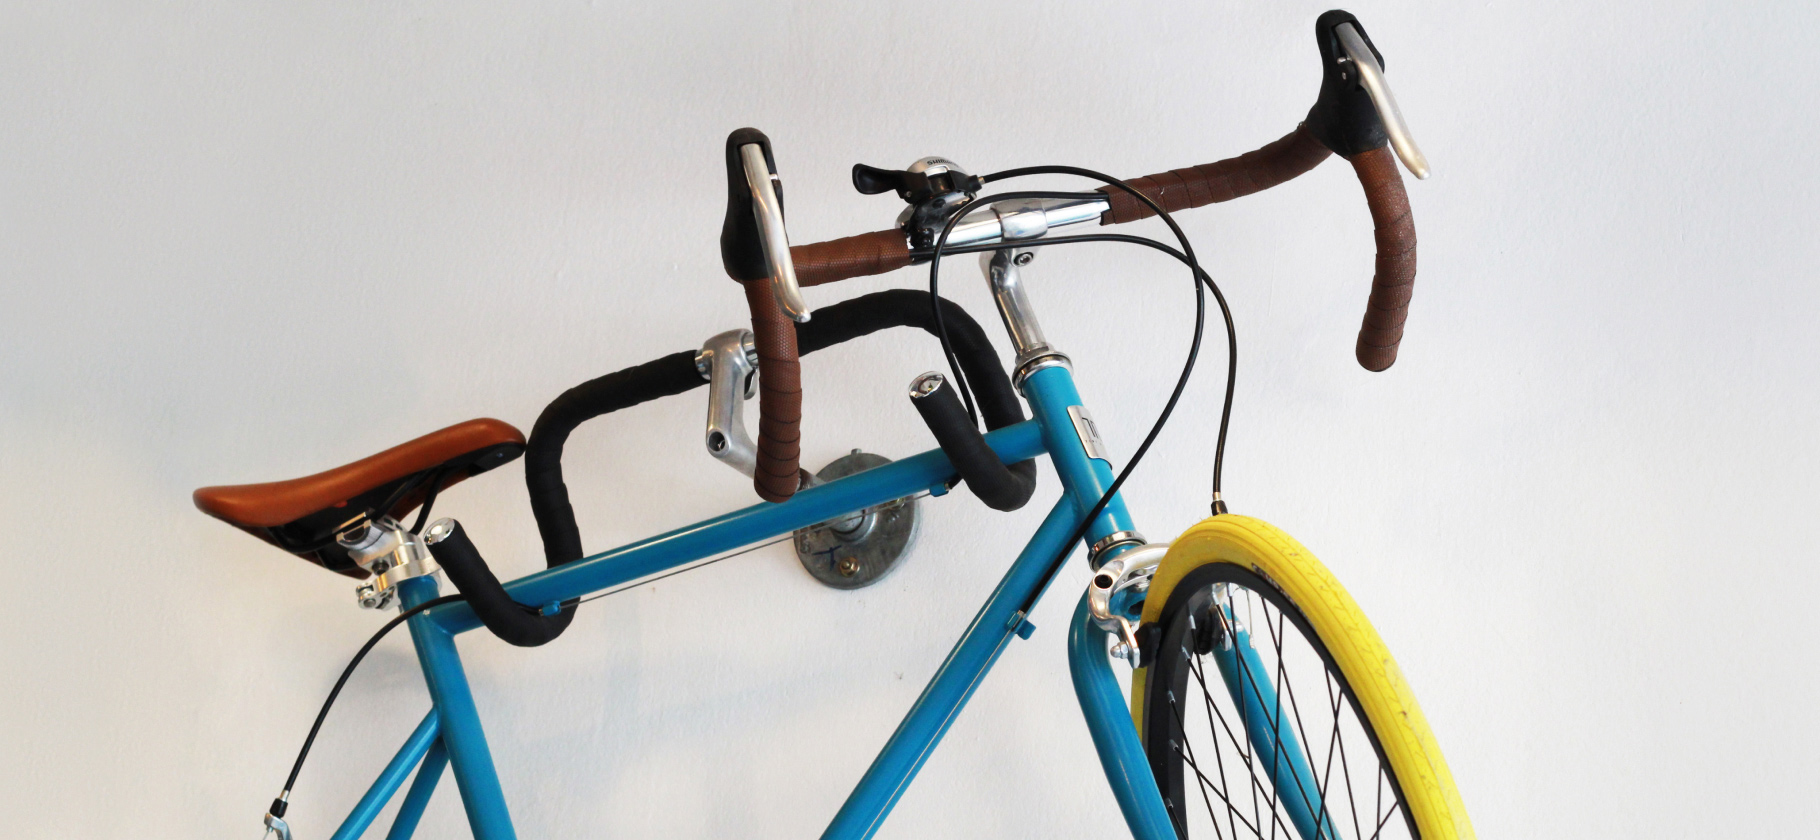 «Квартира крошечная, но место нашлось»: 5 приспособлений для хранения велосипедов дома